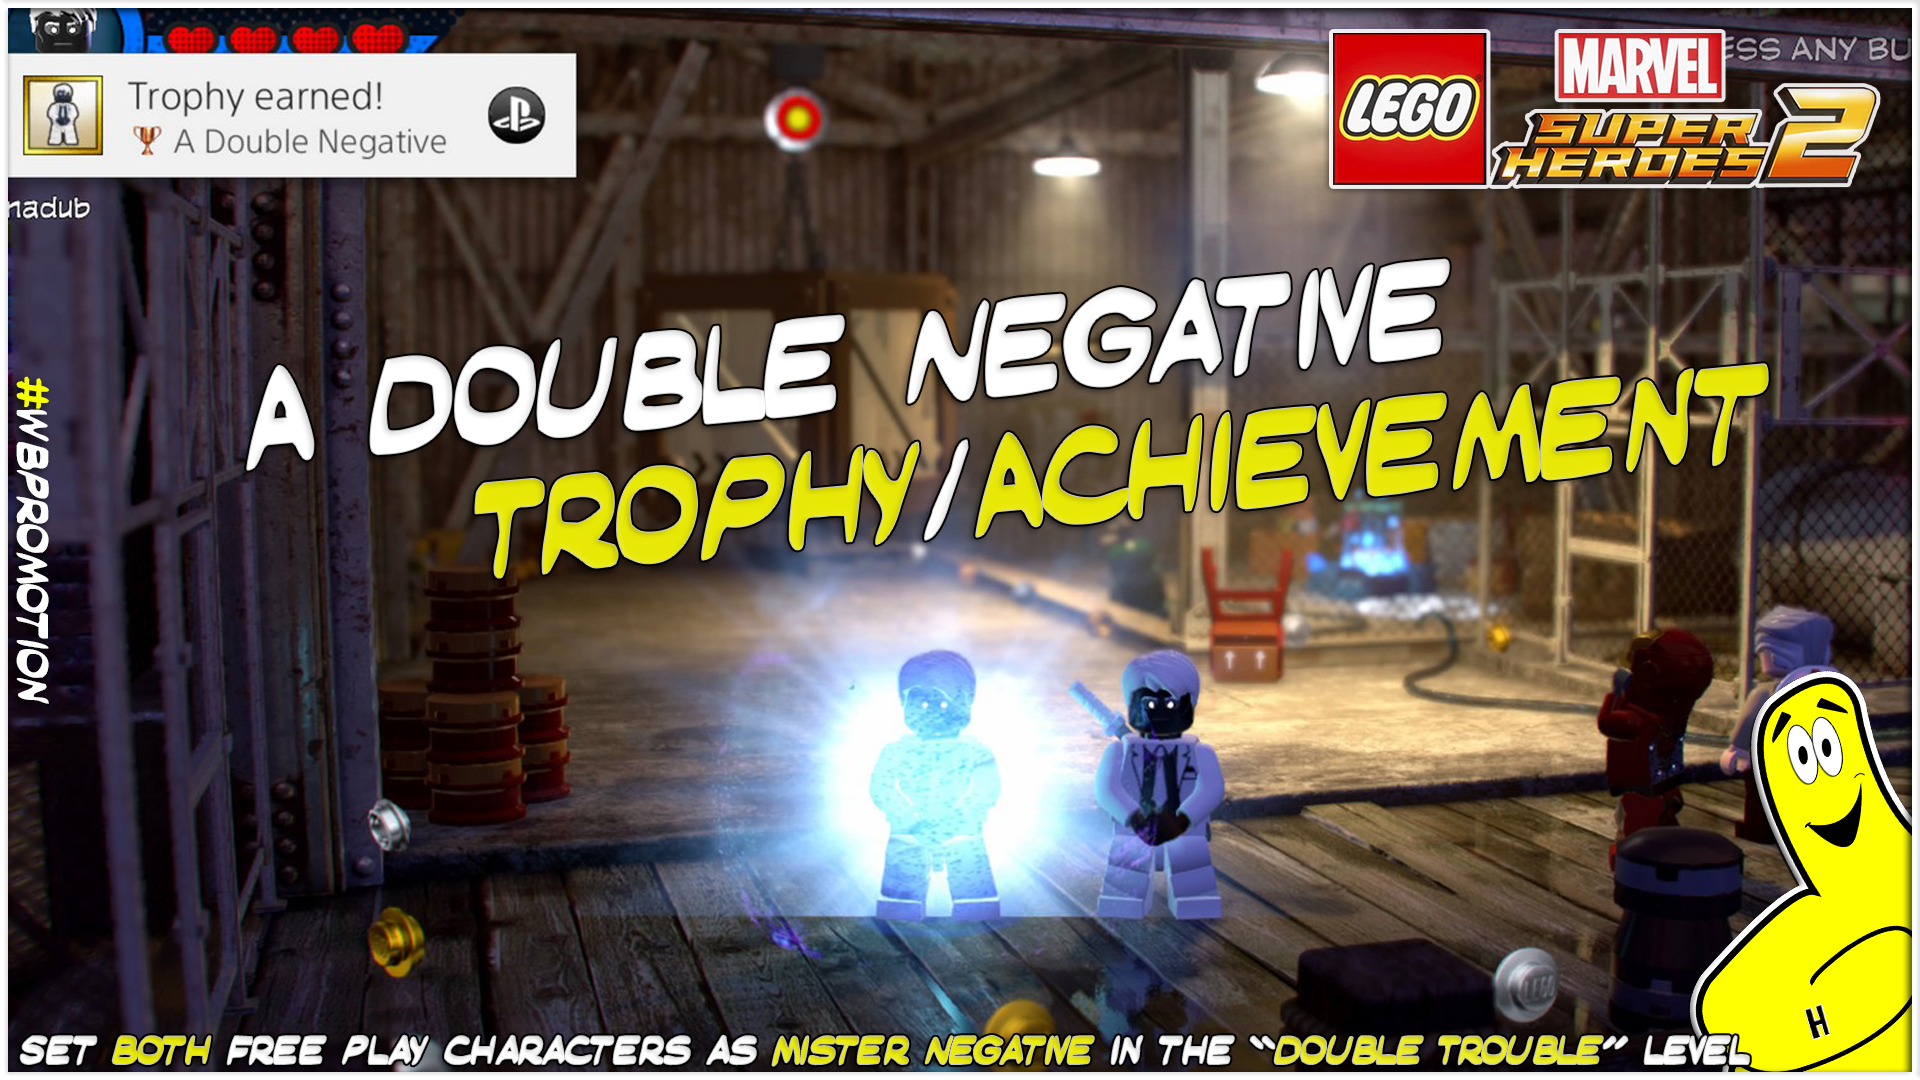 Lego Marvel Superheroes 2: A Double Negative Trophy/Achievement – HTG